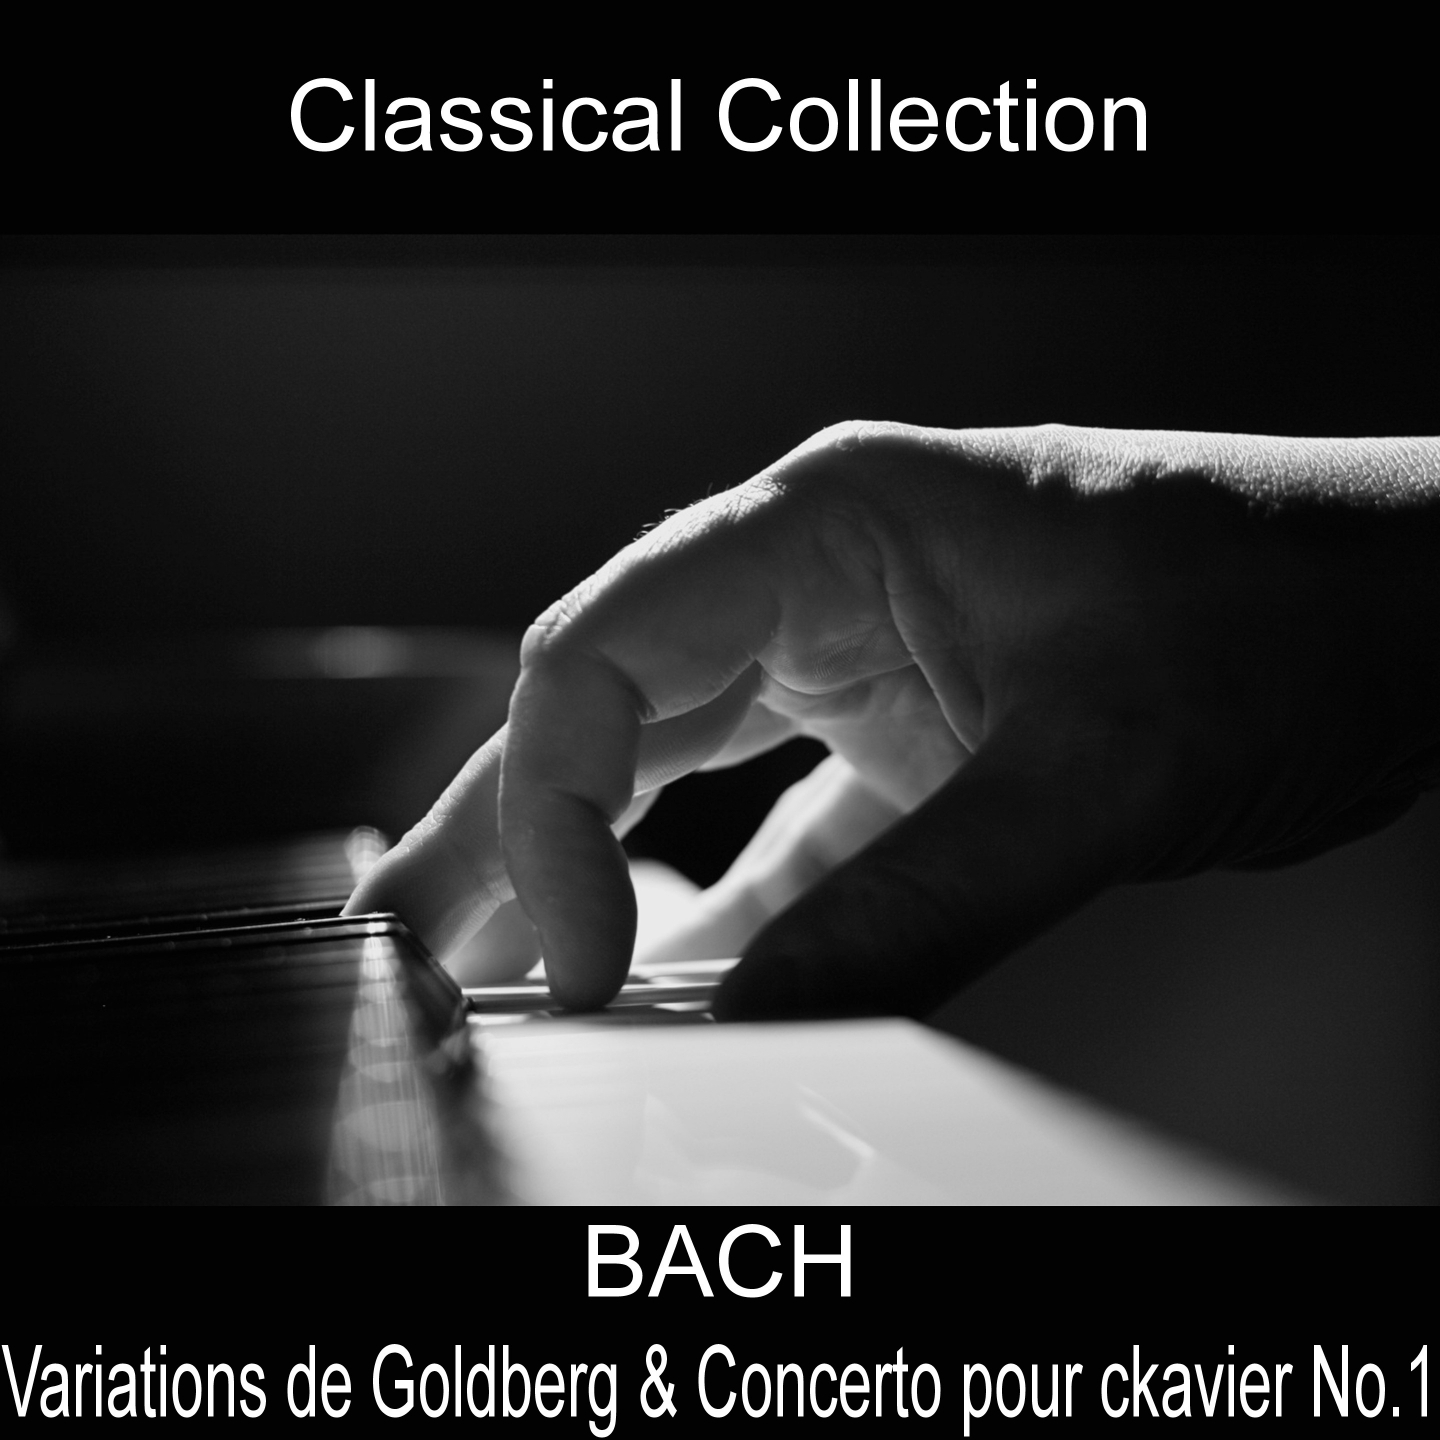 Concerto pour Clavier No. 1 in D Minor, BWV 1052: I. Allegro